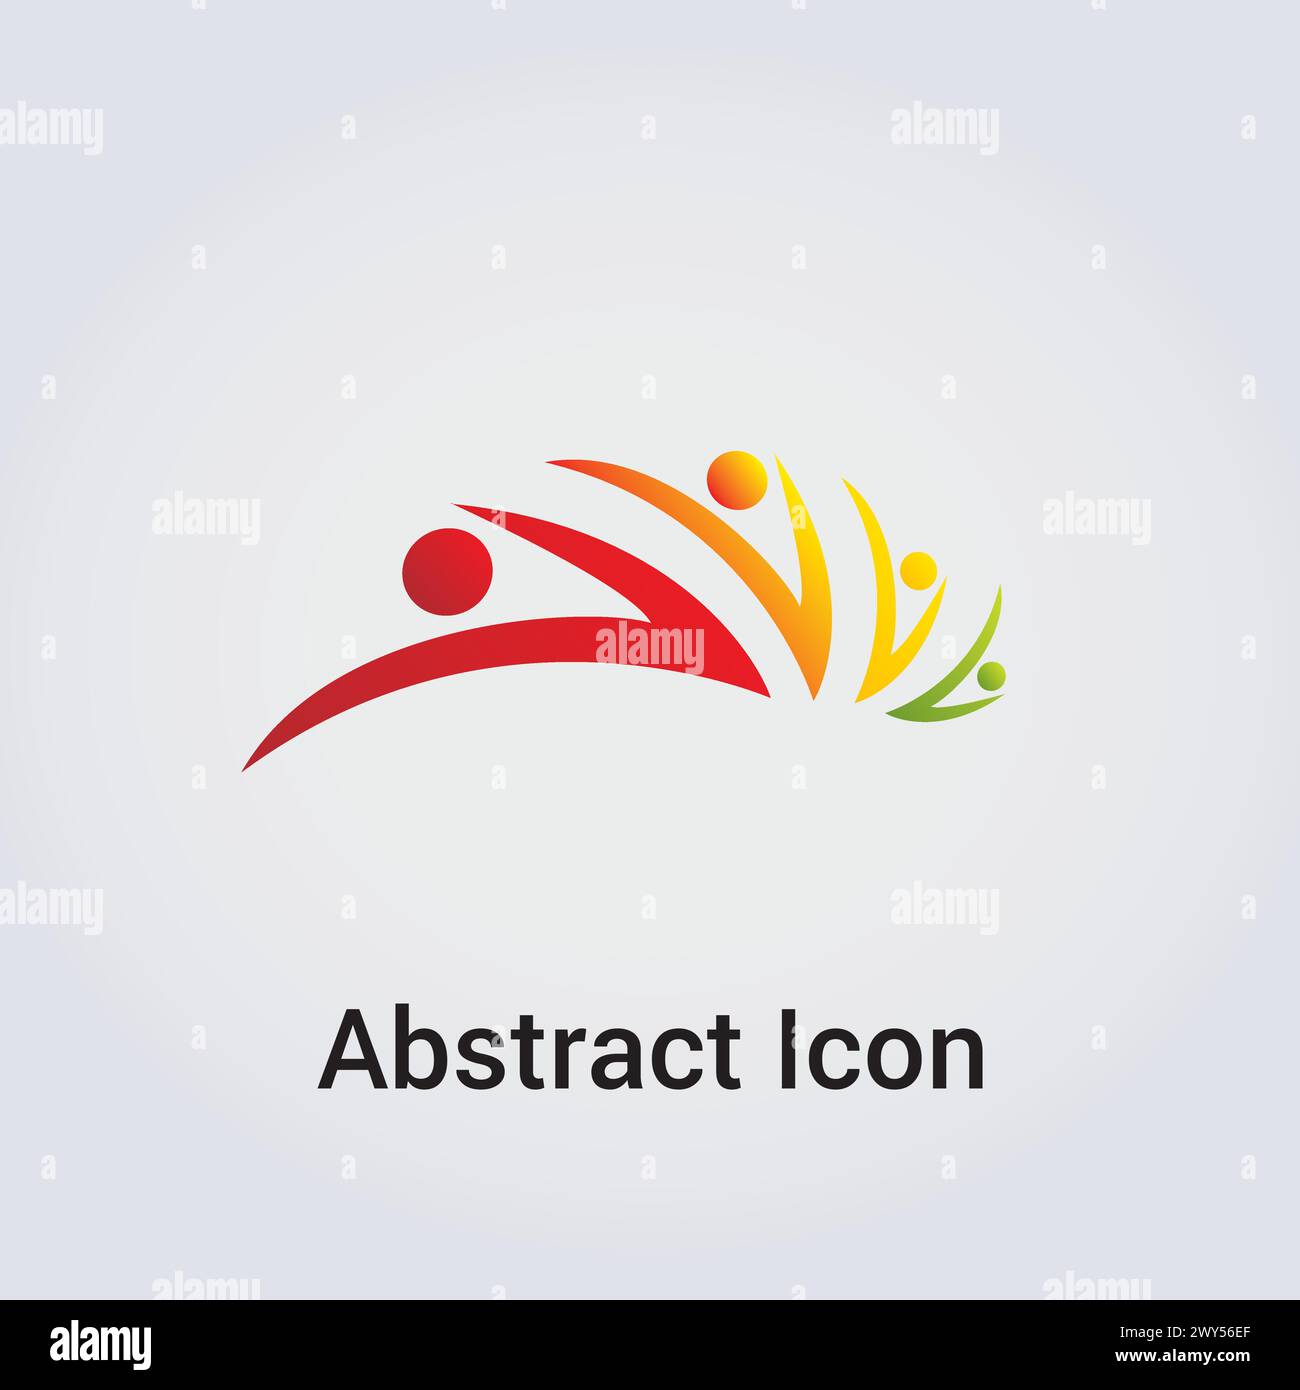 Icona astratta Logo Design forme primarie sagome sagome People Dance Star Circle Clover varie rete di comunicazione Rainbow Colors Vector Illustrazione Vettoriale